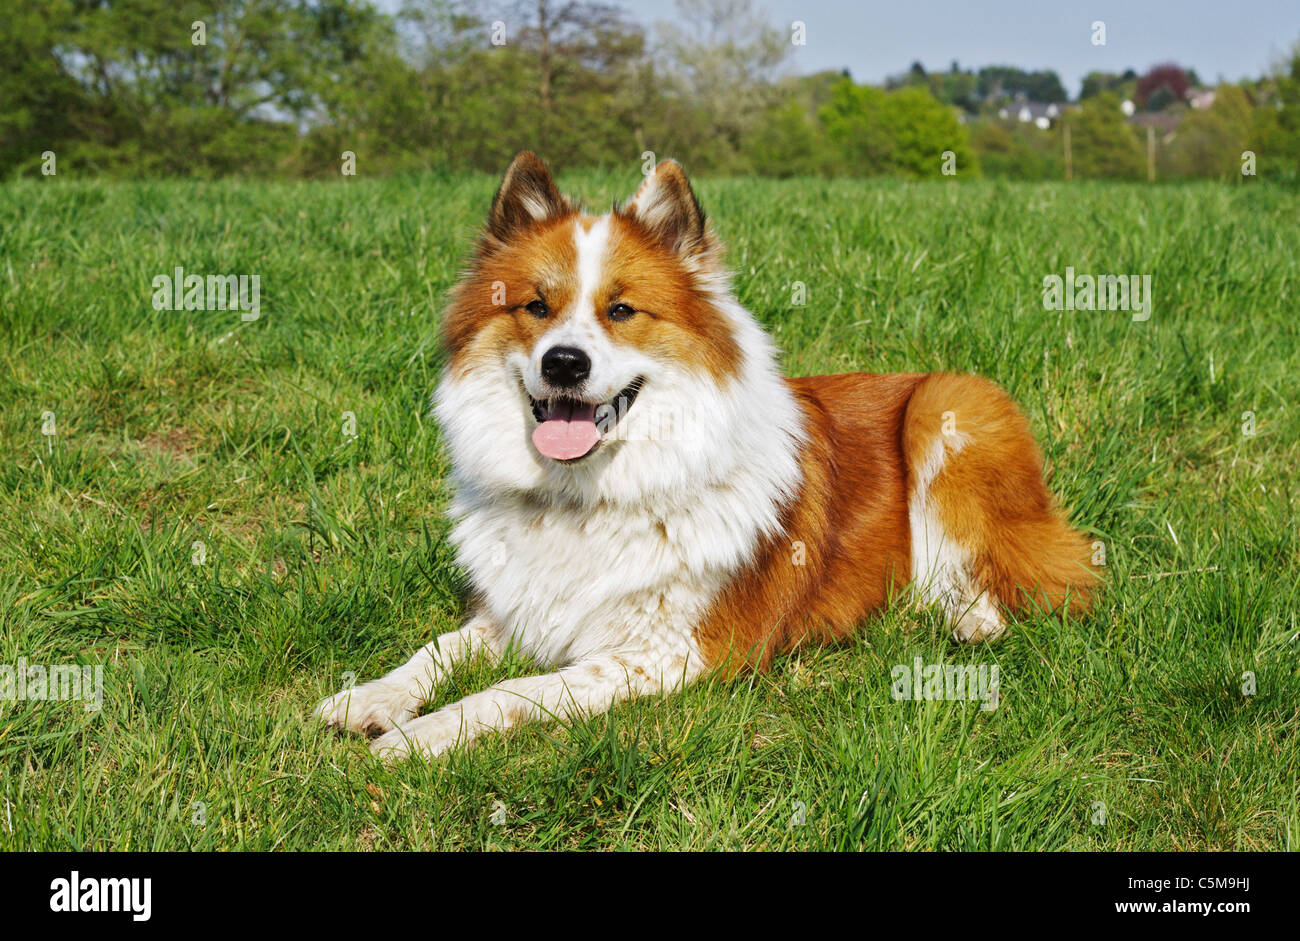 Elo Hund - auf der Wiese liegend Stockfotografie - Alamy